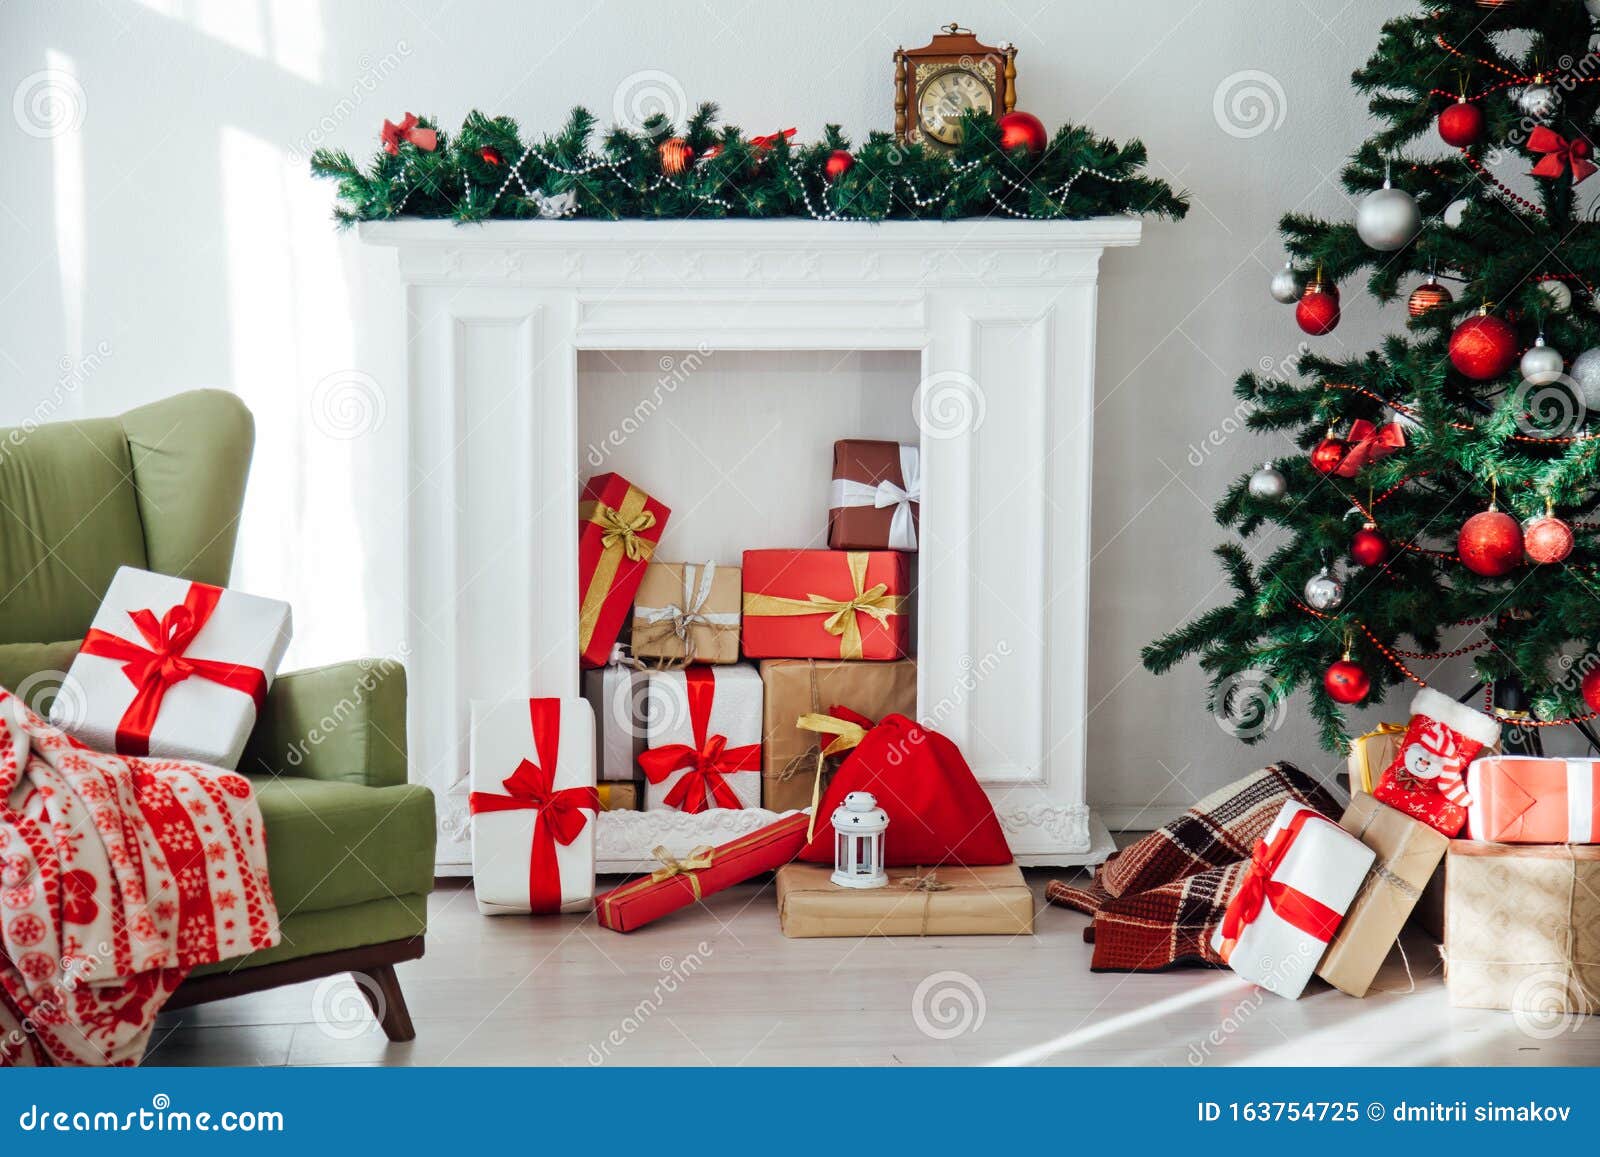 Hãy trang trí màn hình thiết bị của bạn với những hình ảnh nhà Giáng sinh cực kỳ đáng yêu. Với đủ phong cách và kiểu dáng khác nhau, bạn hoàn toàn có thể tìm thấy một mẫu hình nền nhà Giáng sinh hoàn hảo để trang trí cho chiếc điện thoại hay laptop của mình.